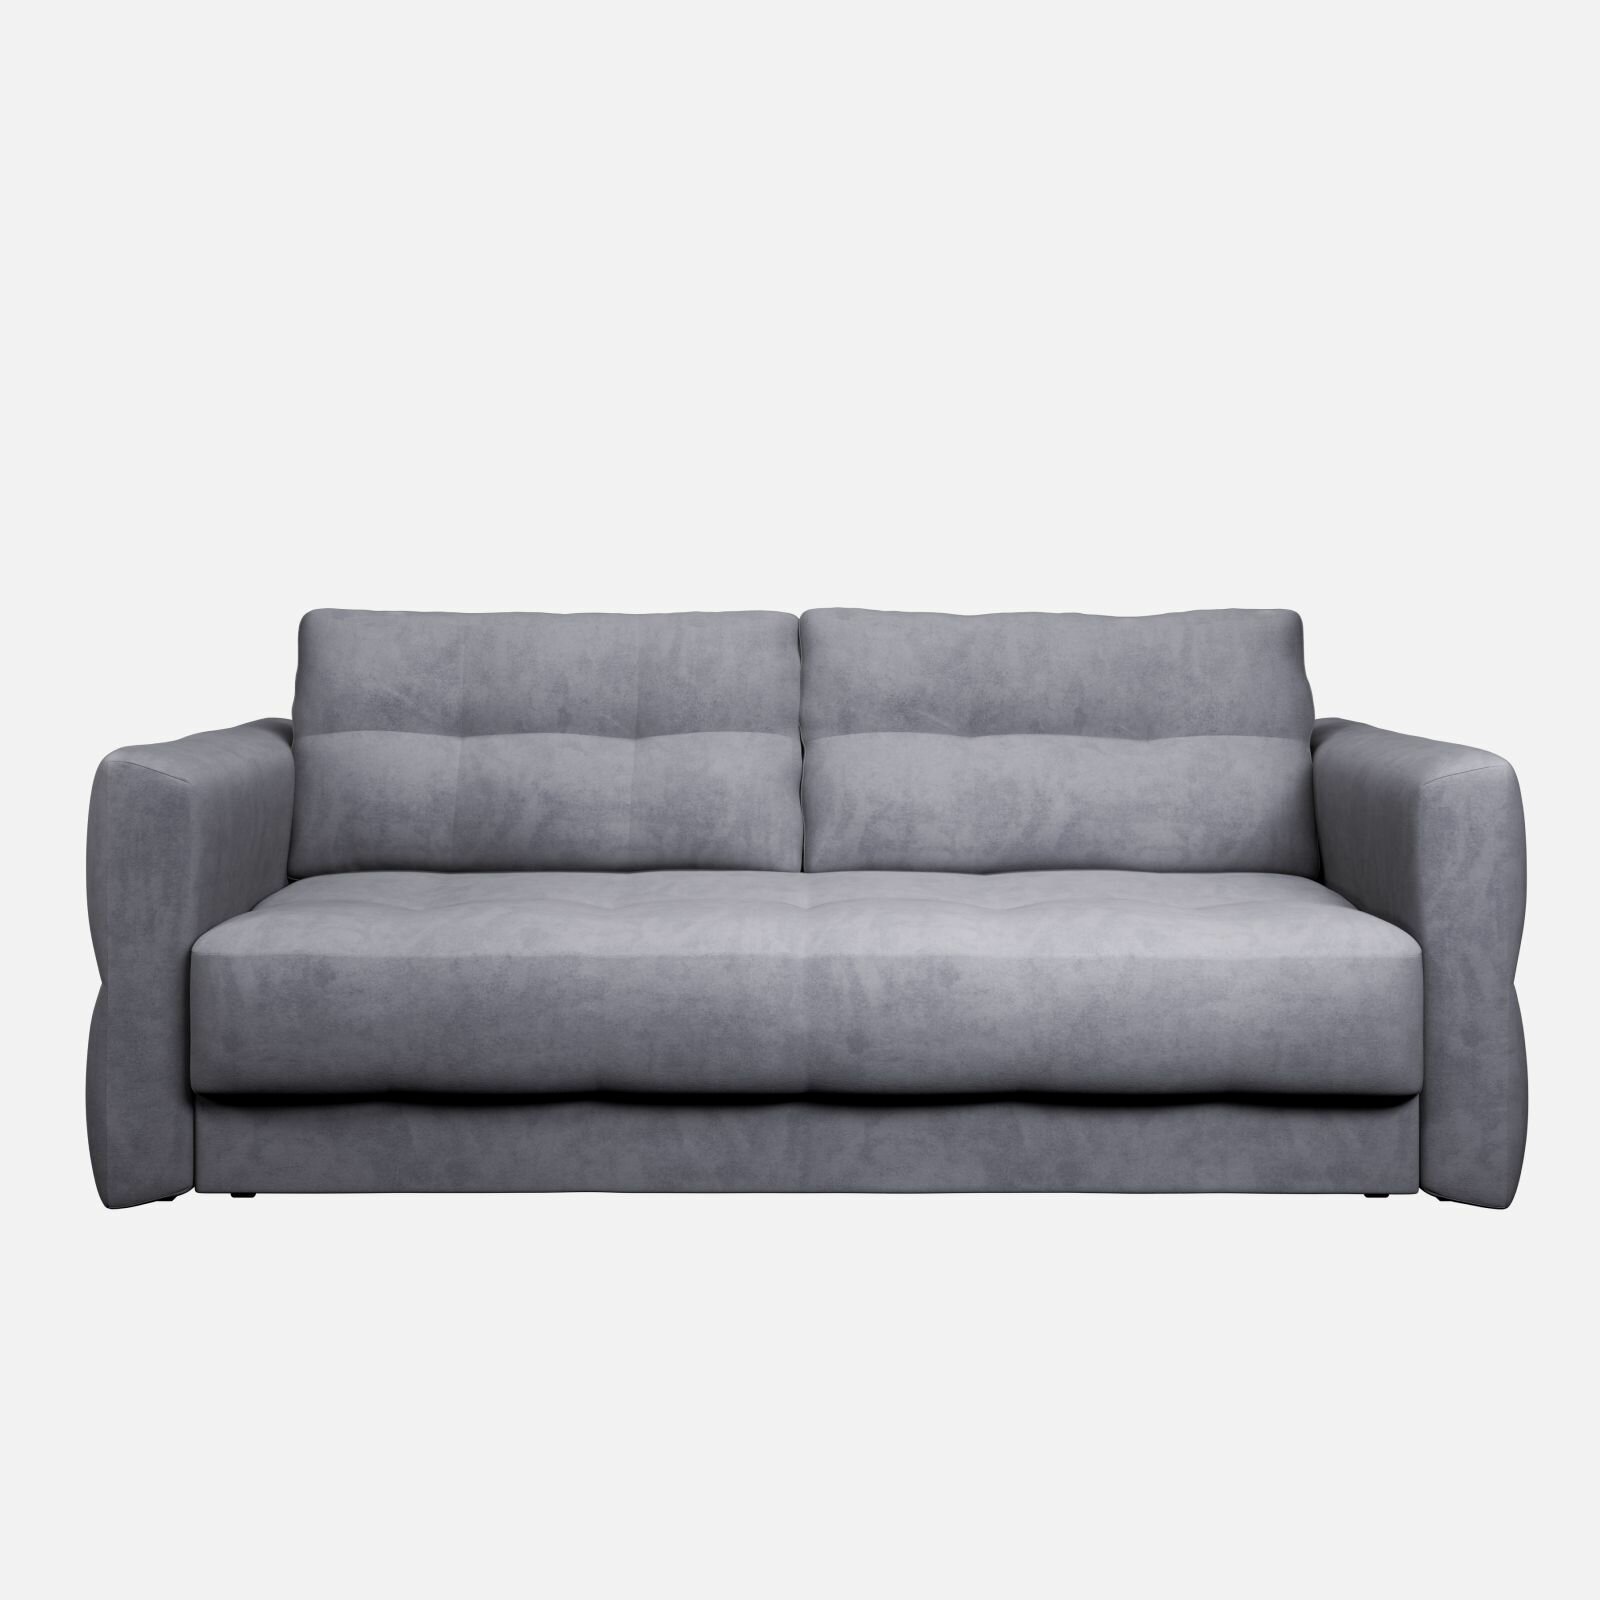 Прямой диван-кровать Manons Maison Ricco, раскладной механизм Еврокнижка (Тик-так), Велюр серый, 230х115х100 см. Товар уцененный